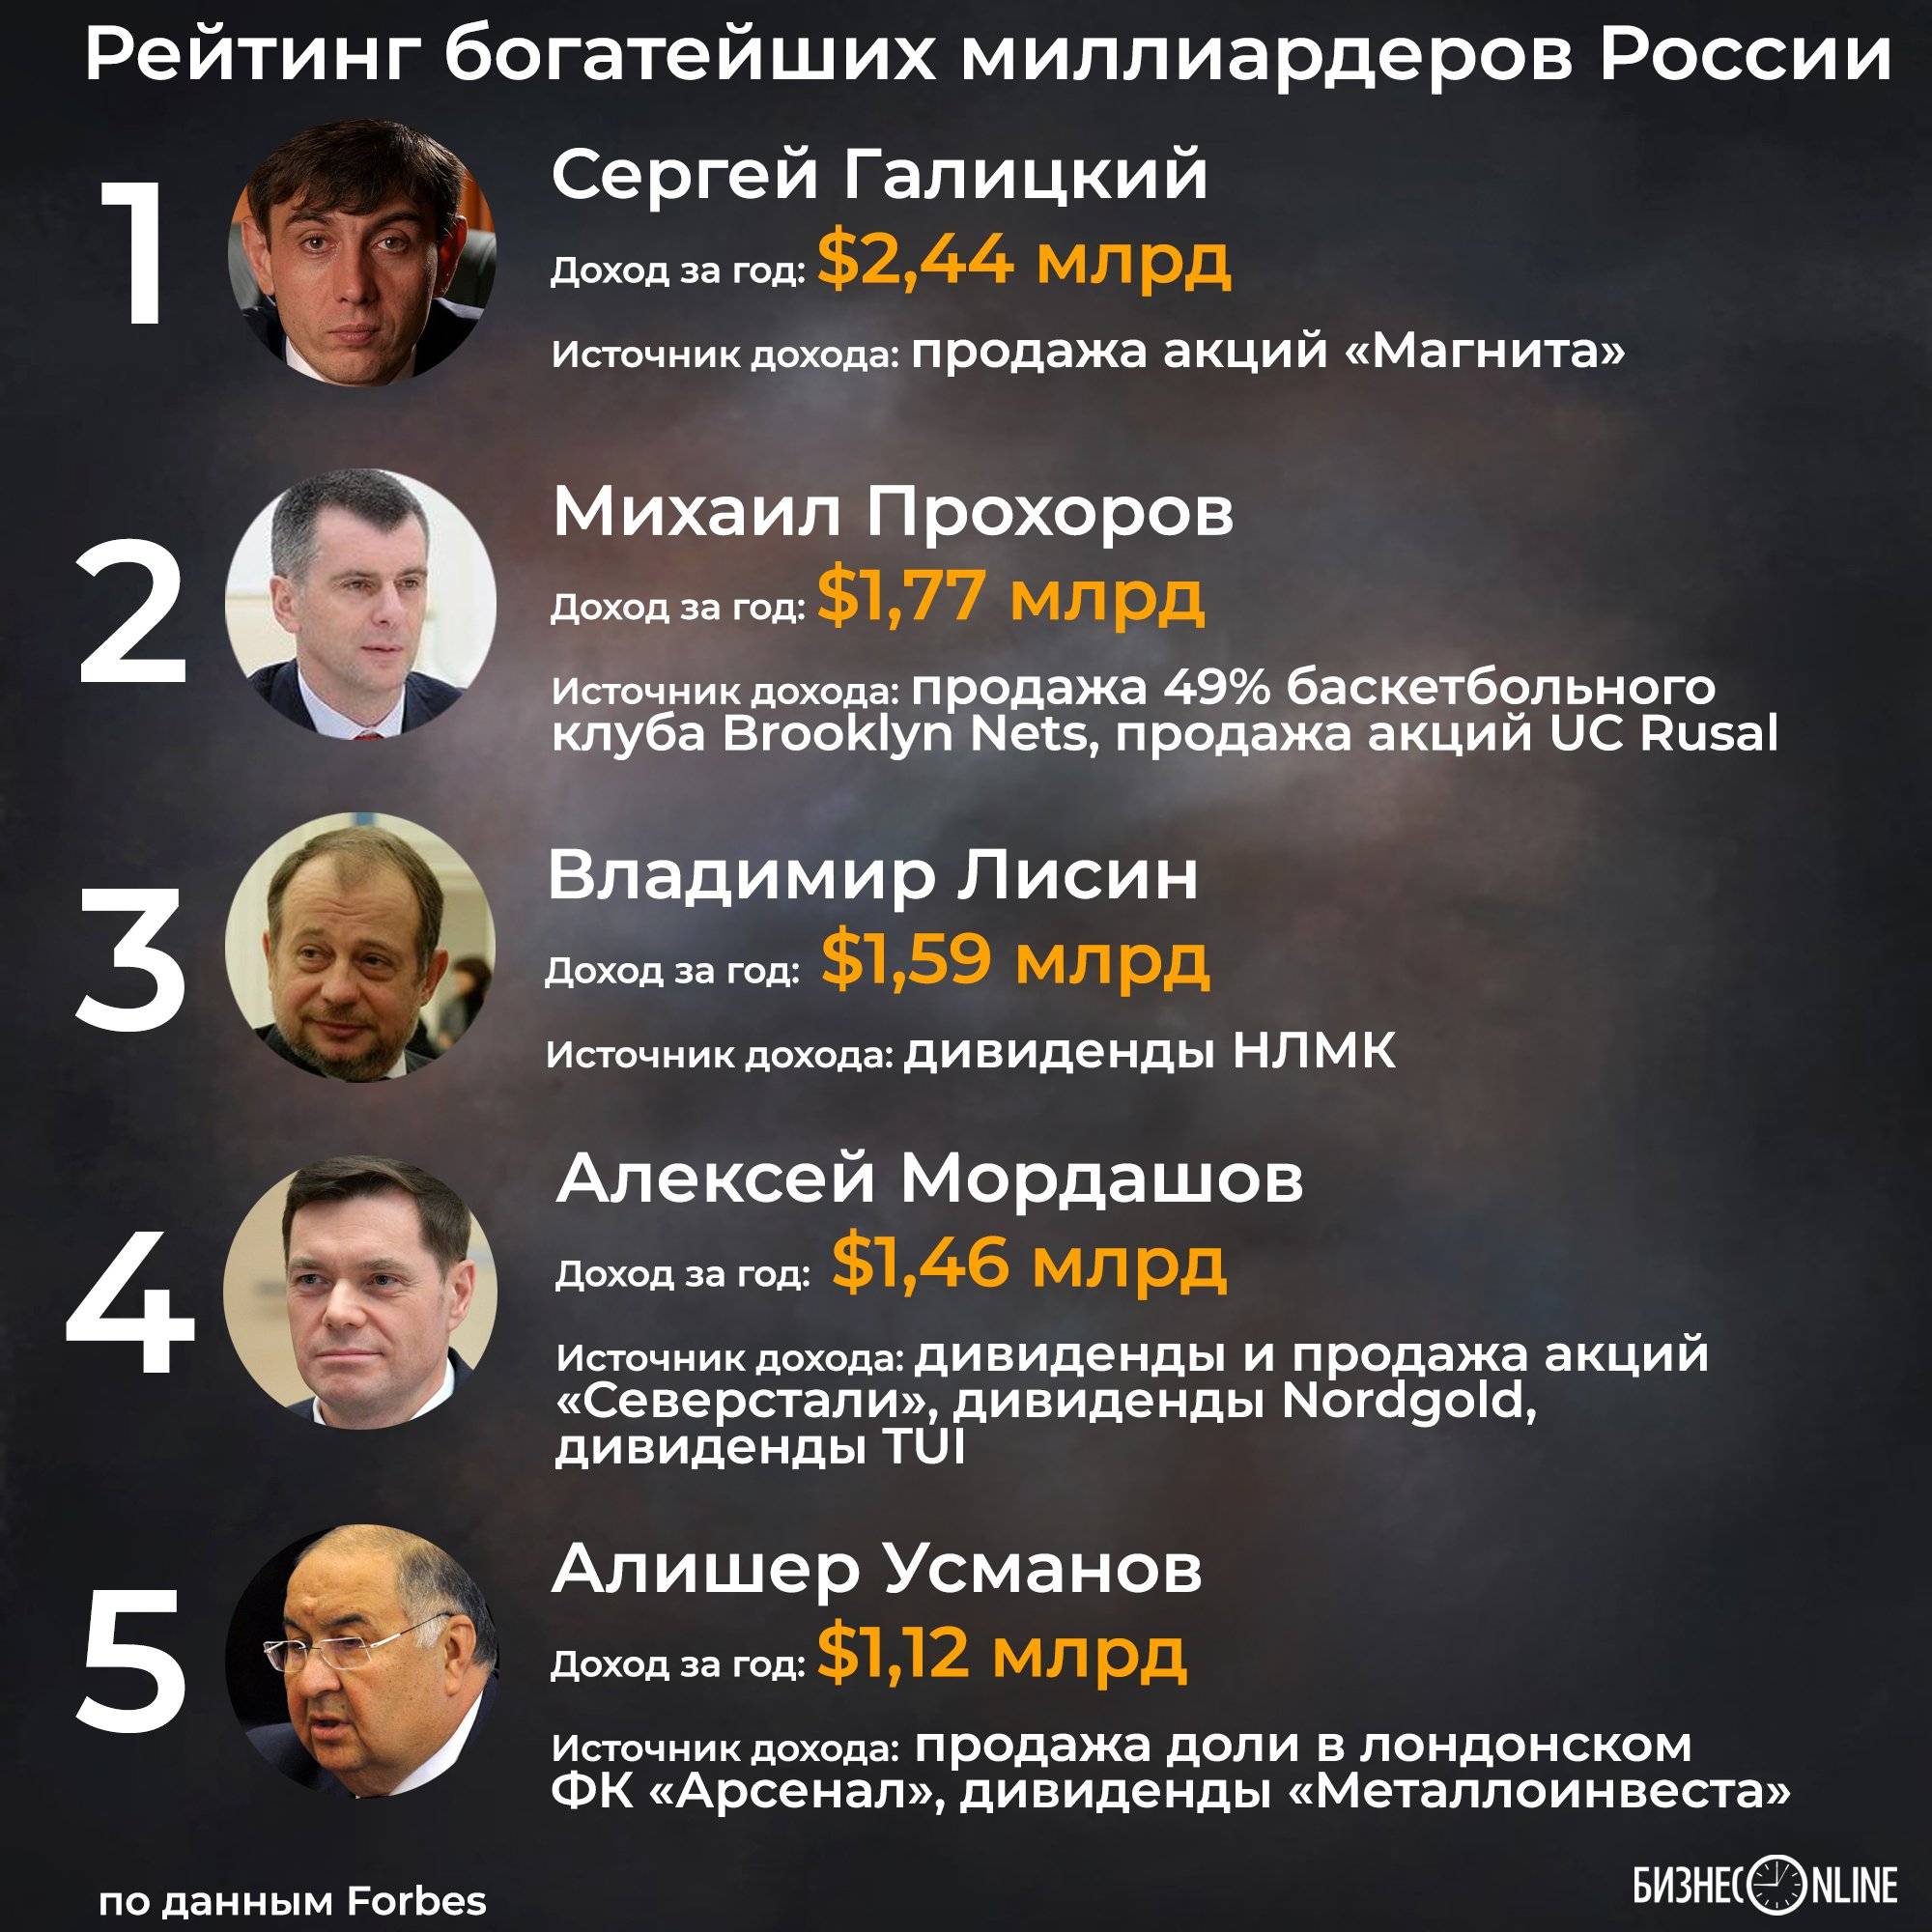 Сколько долларов миллиардеров в россии. Список форбс. Миллионеры России список. Самый 1 в списке форбс. Список миллиардеров России.